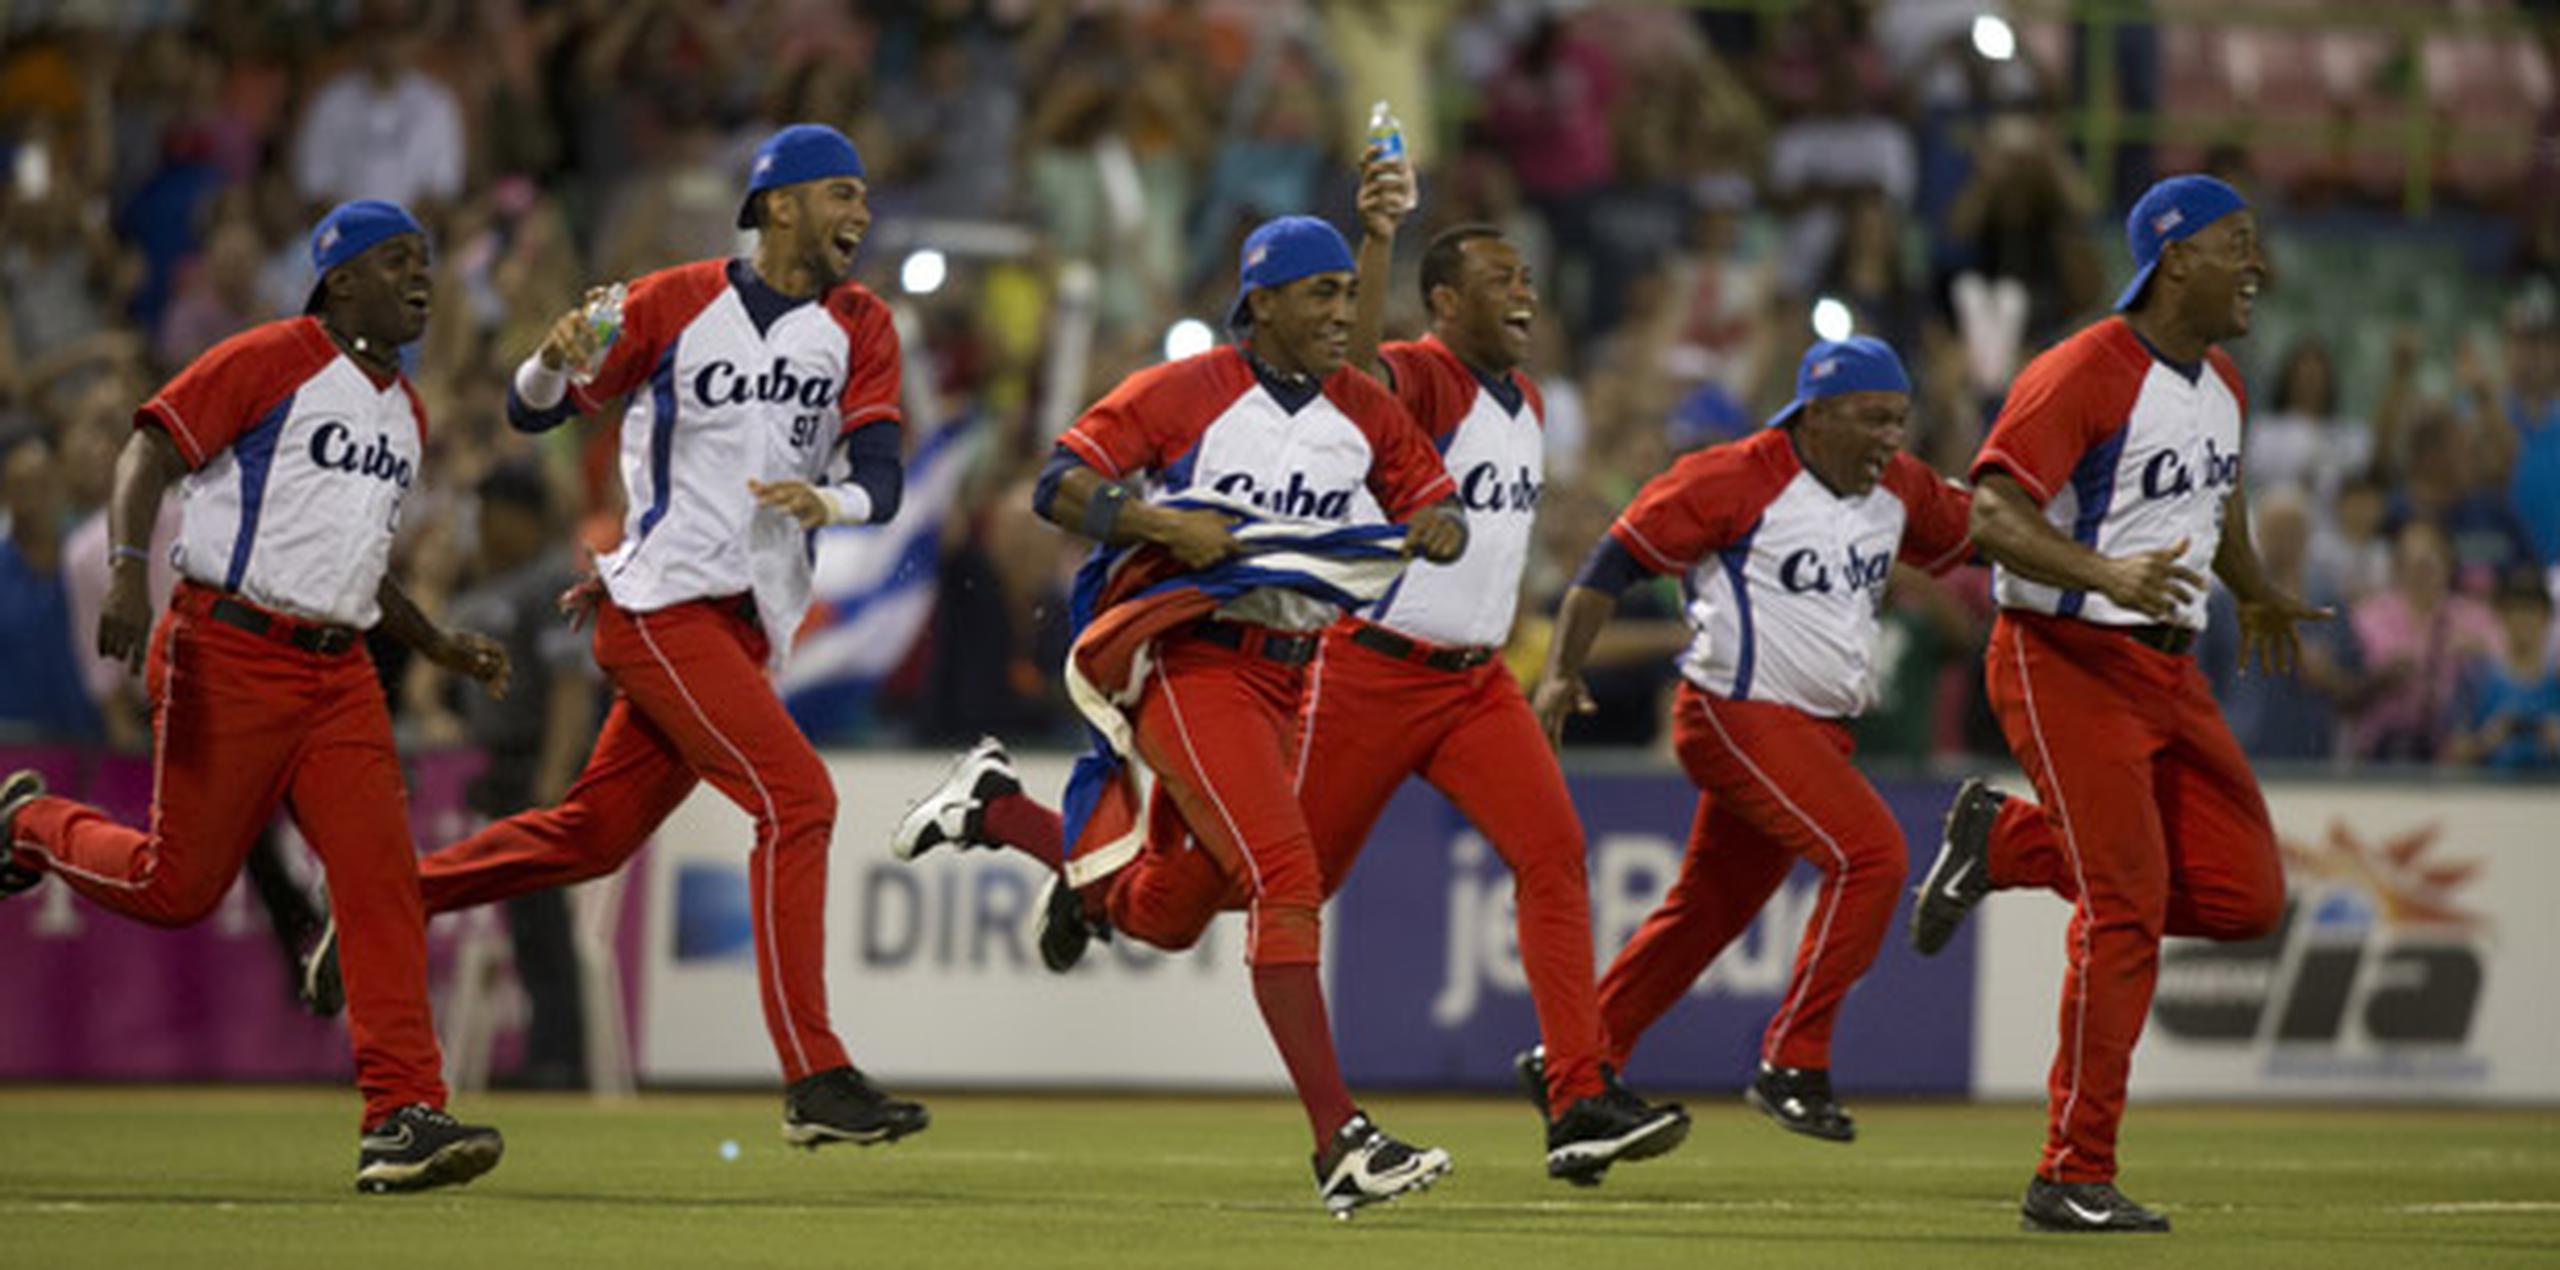 El regreso del béisbol cubano a la Serie del Caribe, el cual se concretó en el 2014, le ha dado más chispa al torneo. (xavier.araujo@gfrmedia.com)